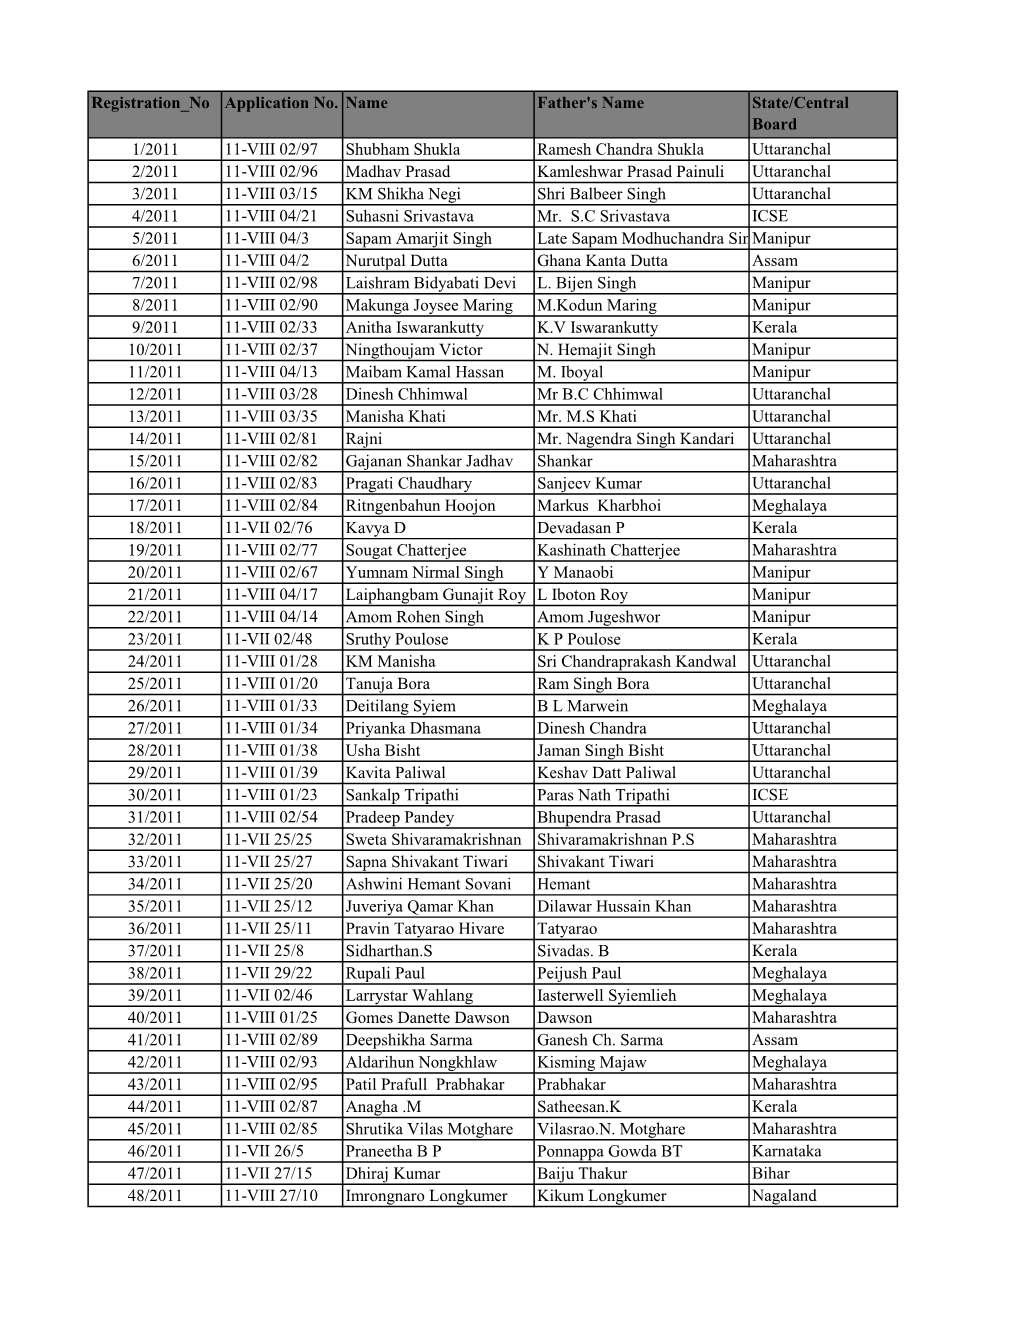 2011 Batch List of Previous Batch Students.Xlsx